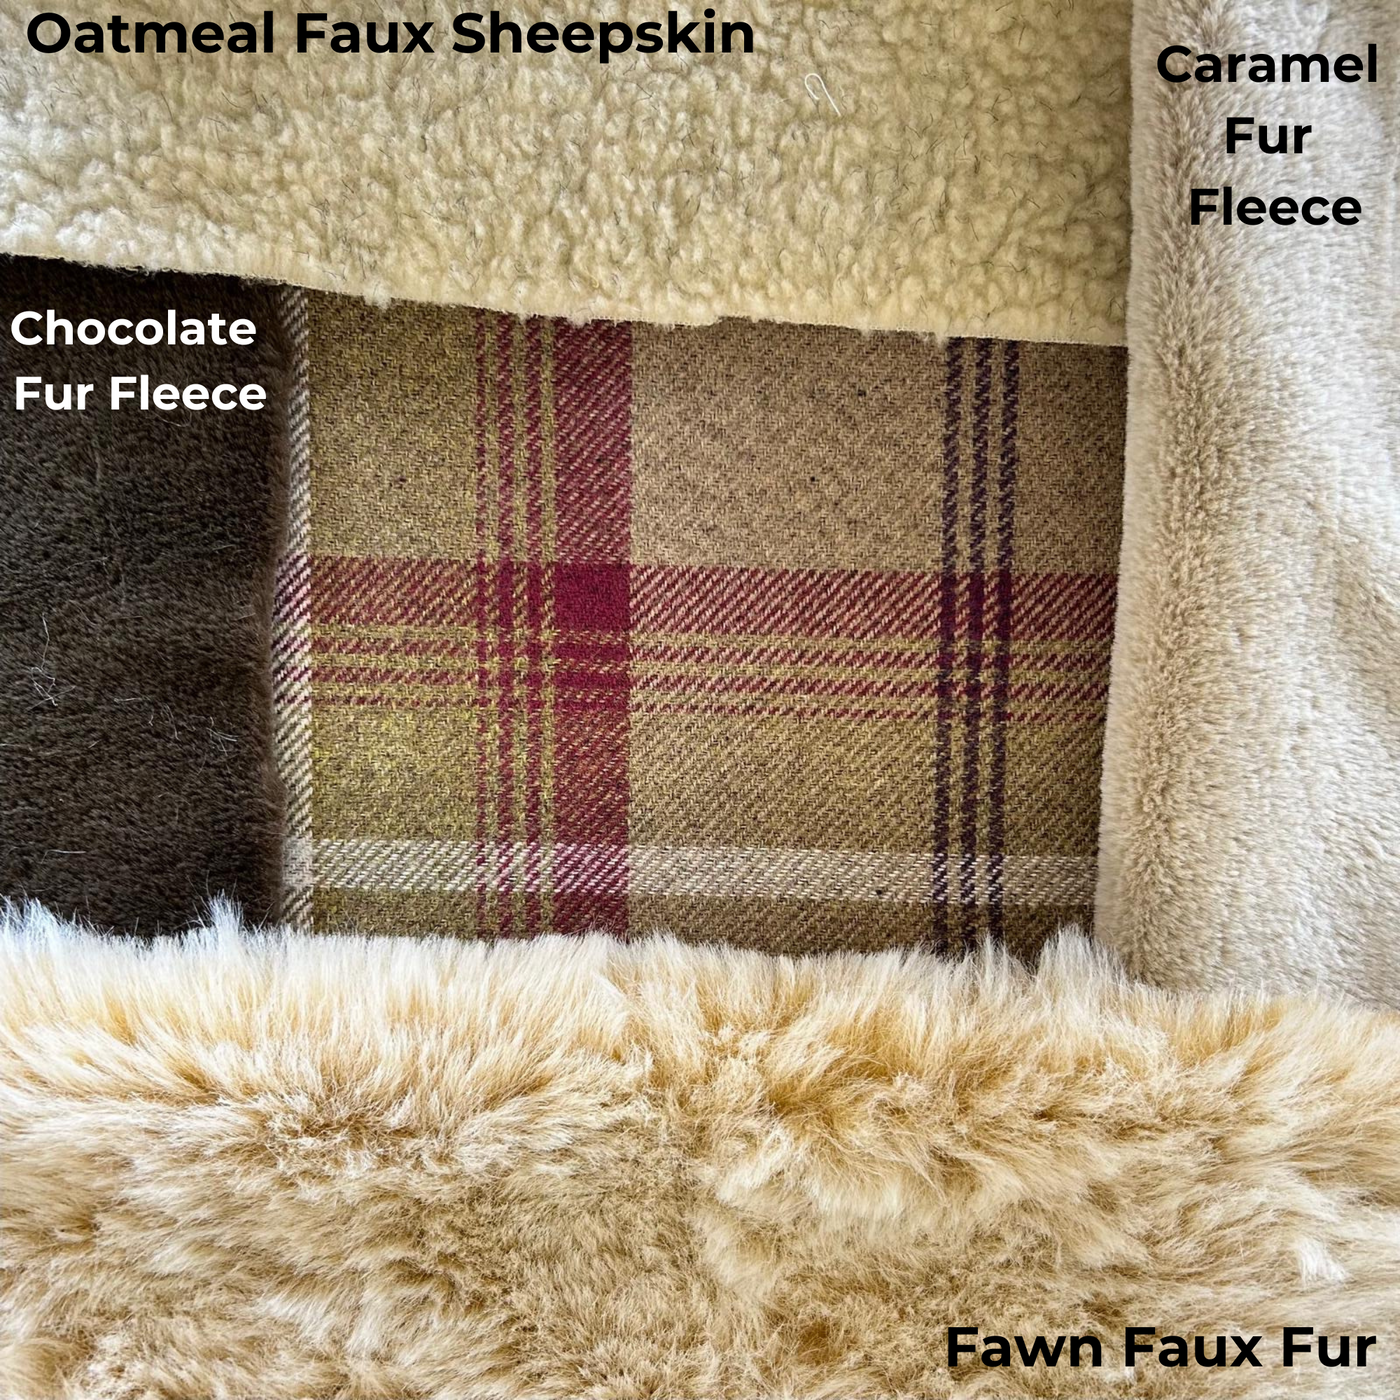 heather snuggle bed #fleece_caramel-fur-fleece